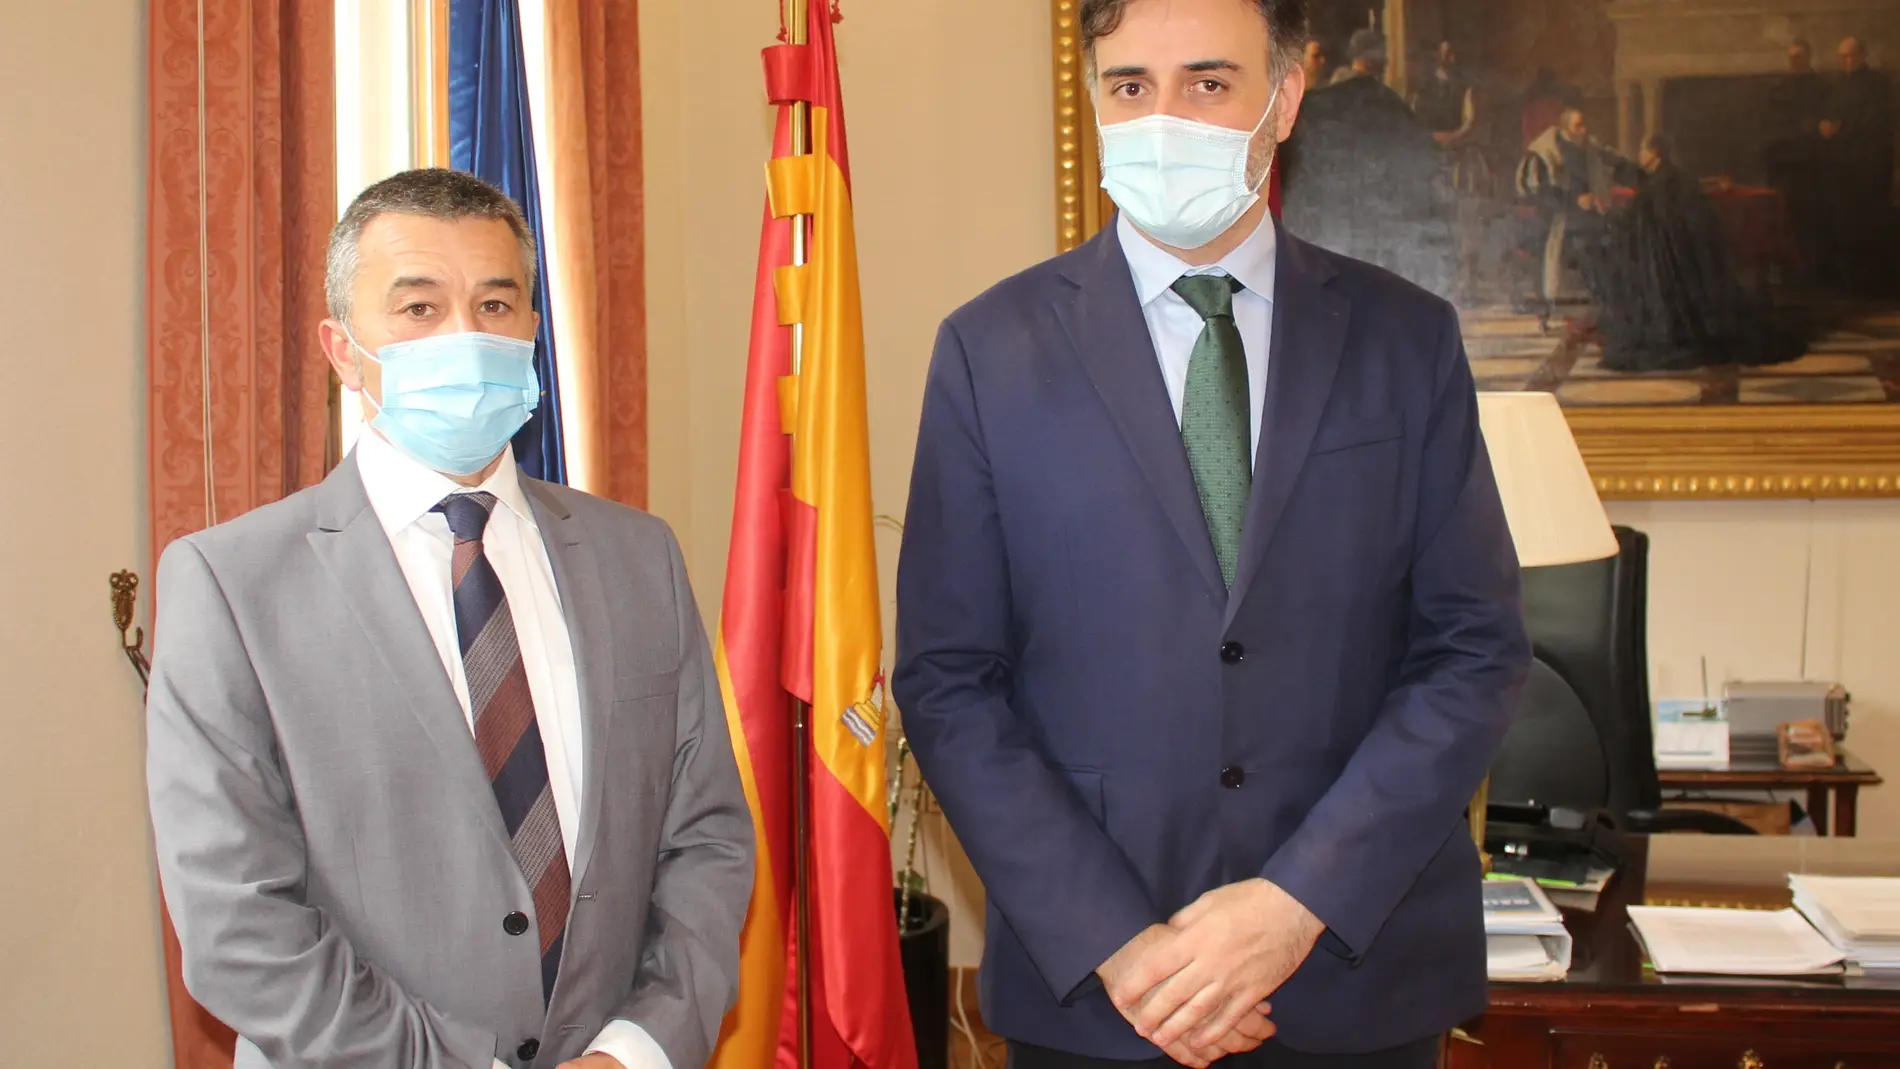 José Luis Escrivá, Ministro de Migraciones, visita la Oficina de Extranjería de la Subdelegación del Gobierno en Albacete 